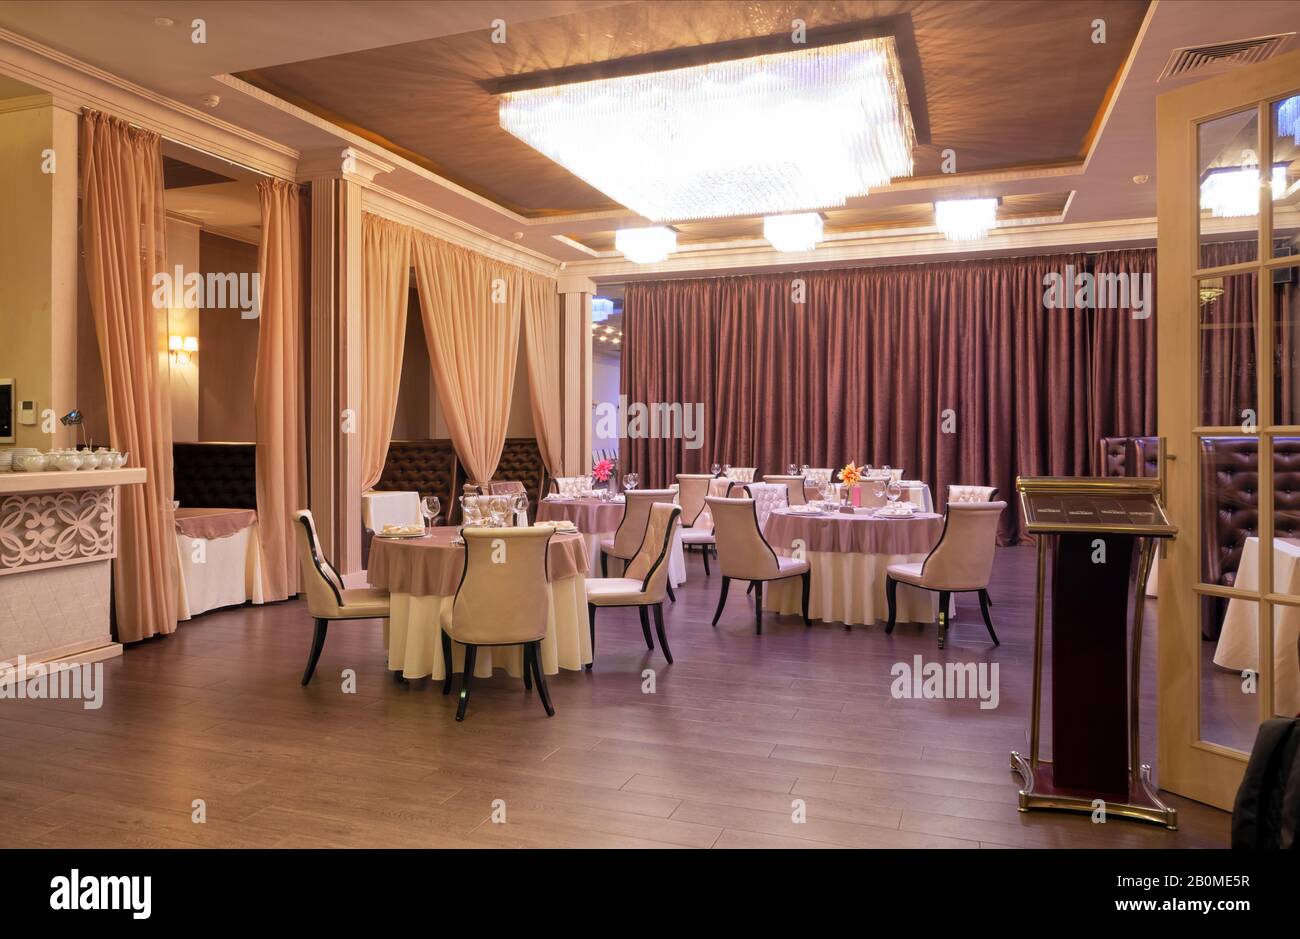 Moskau - SEPTEMBER 2014: Das Innere des Restaurants "Papa Karlo" mit einem Bankettsaal im klassischen Stil Stockfoto